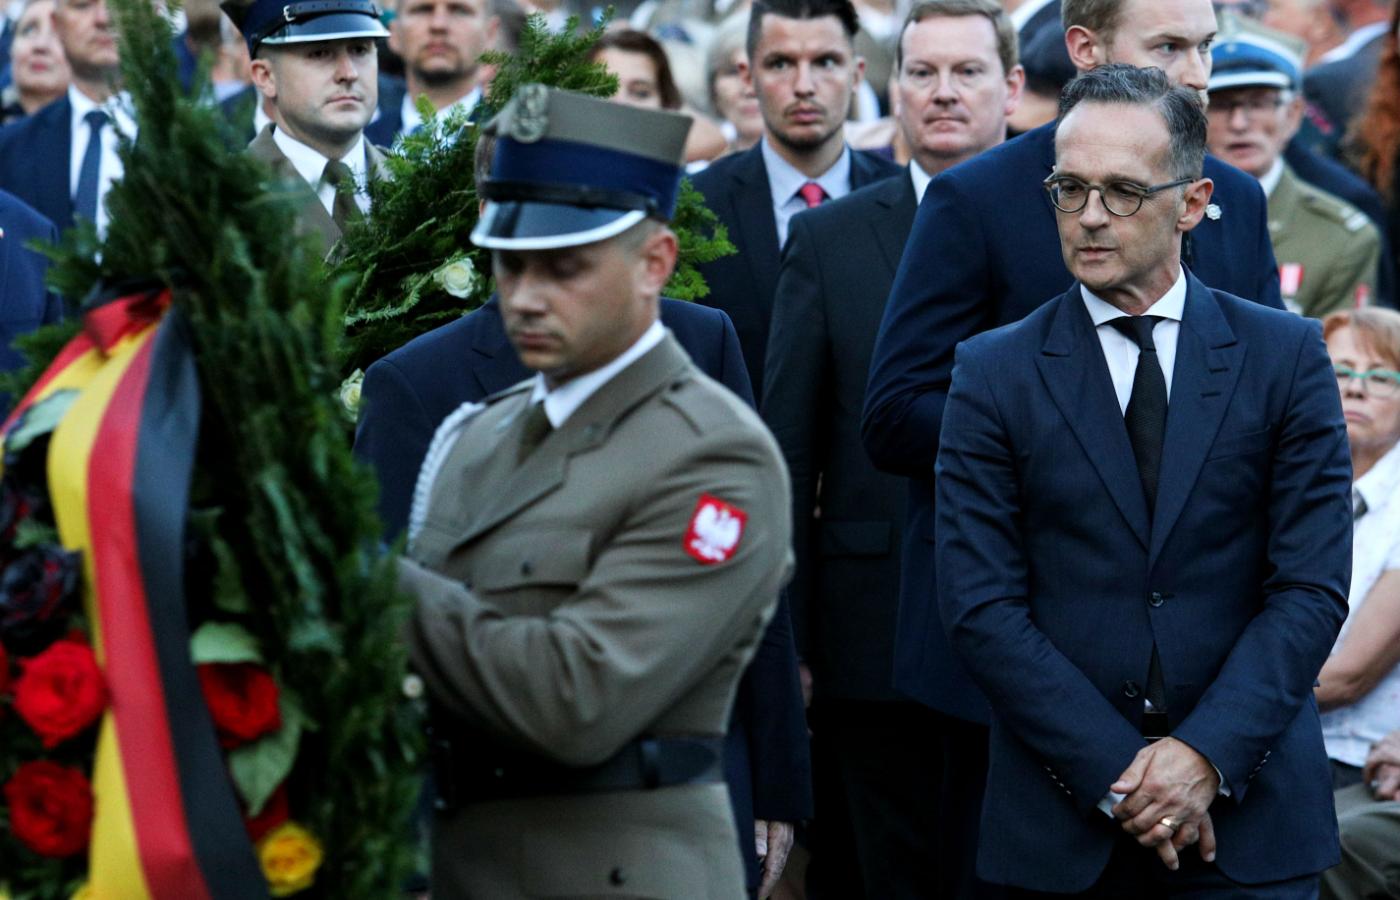 Niemiecki szef dyplomacji Heiko Maas podczas obchodów 75. rocznicy wybuchu powstania warszawskiego.